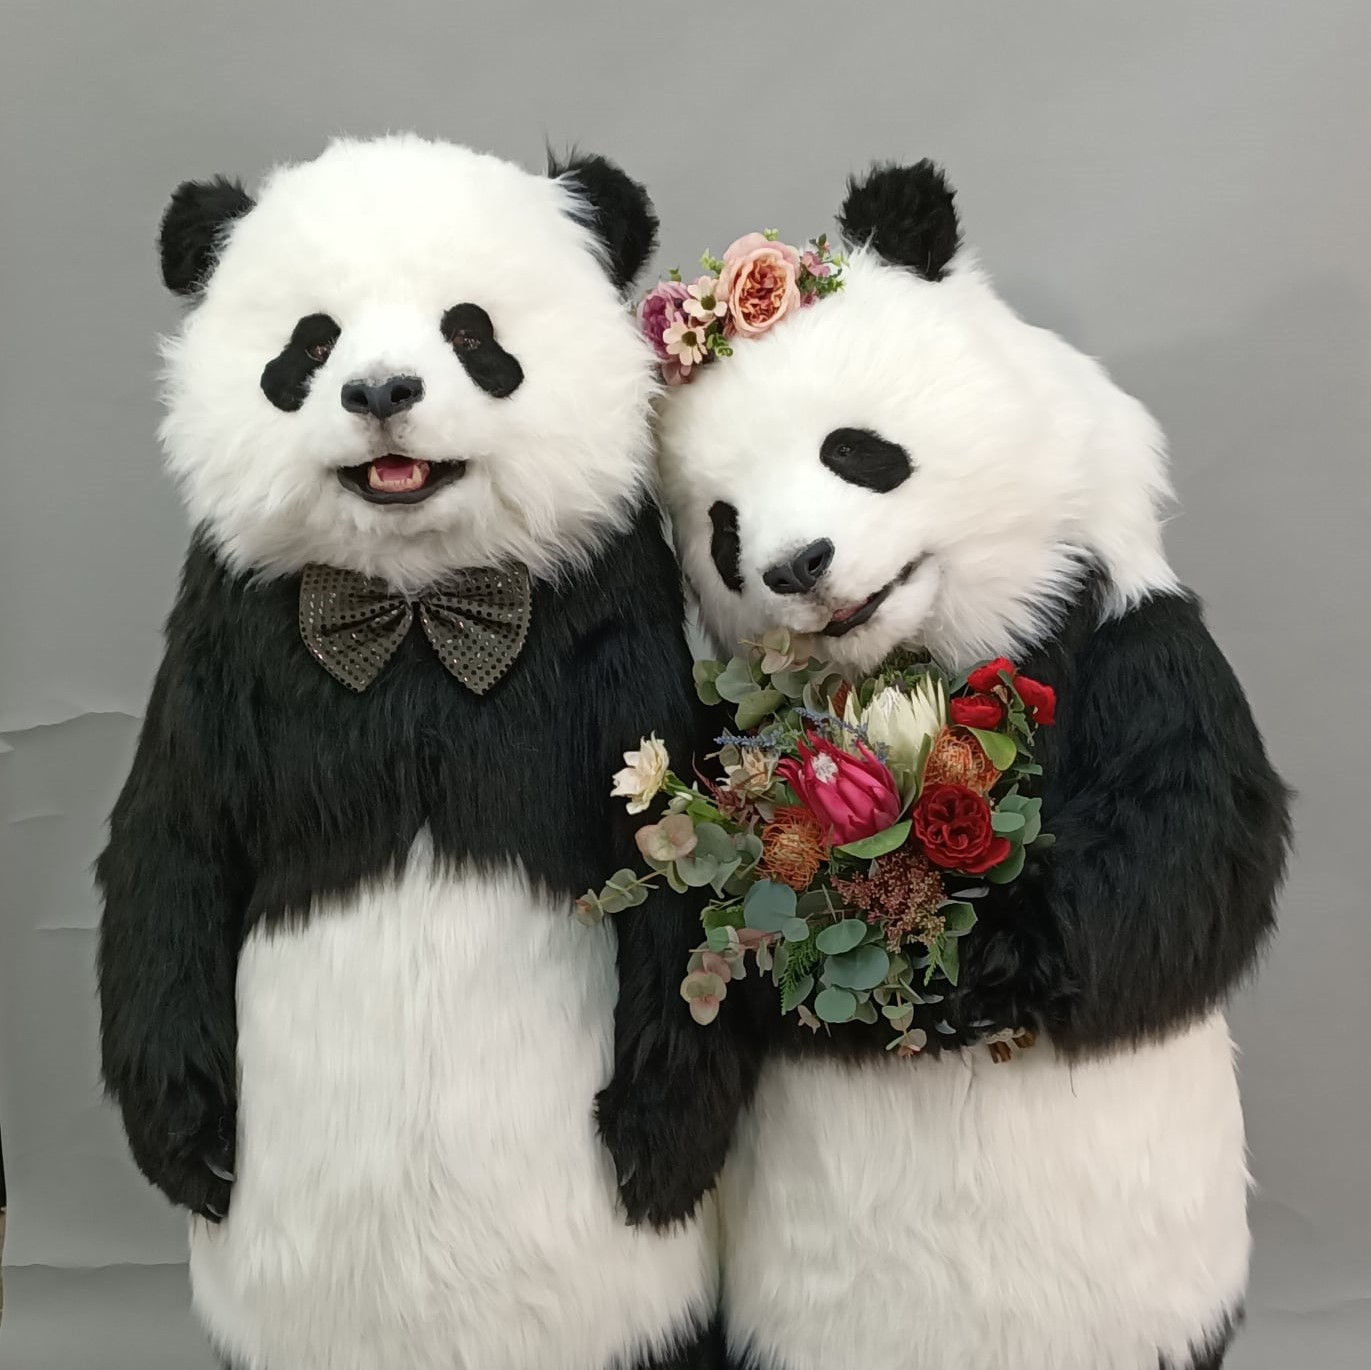 魔人社2020 HOLA熊貓人偶裝製作 animatronic panda costume